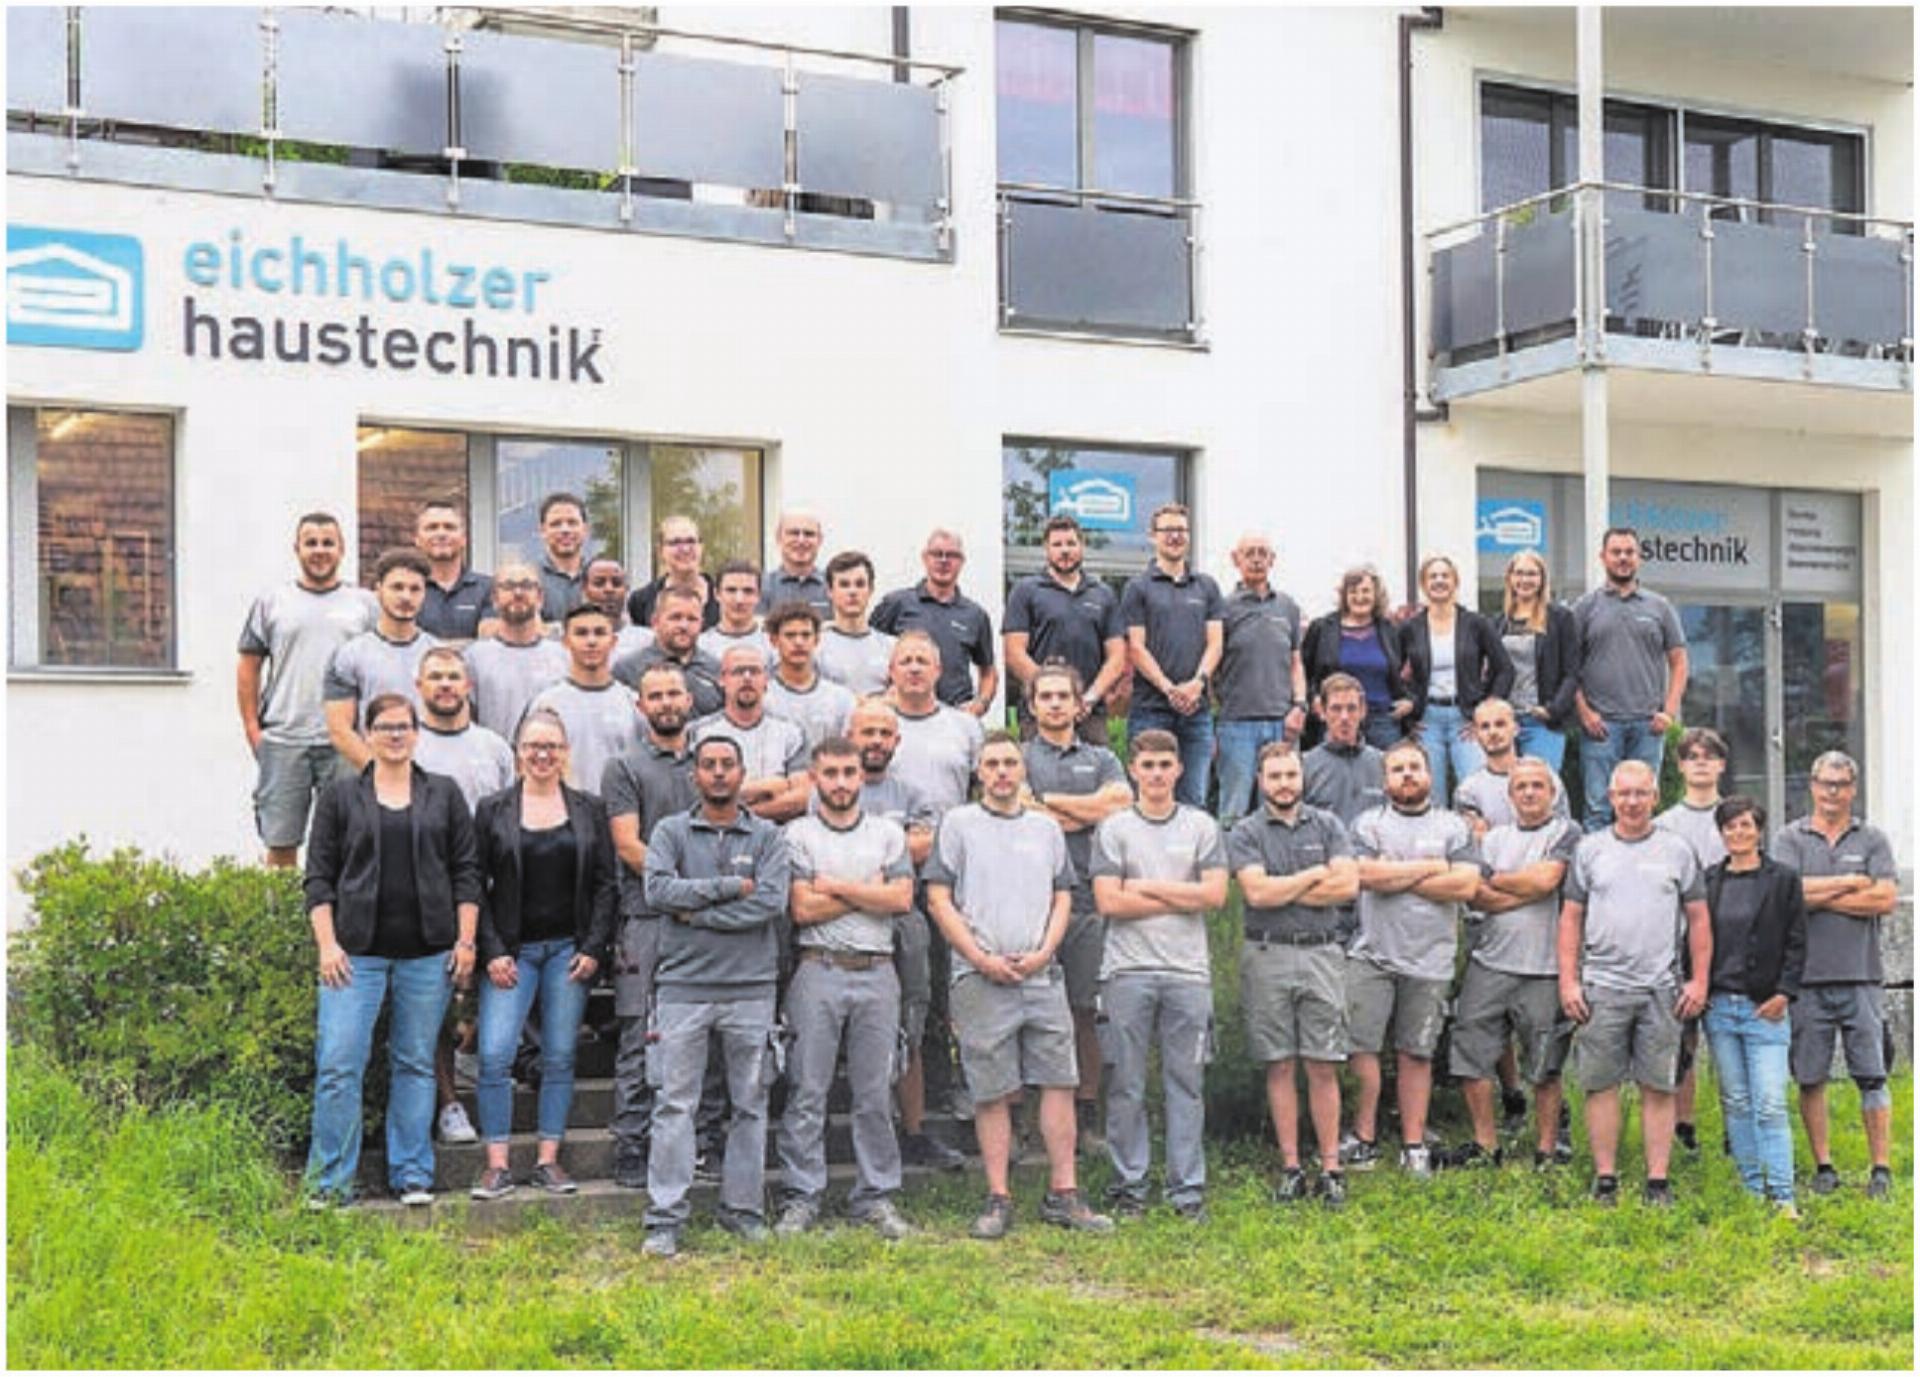 Die Eichholzer Haustechnik AG verfügt über ein starkes Team. Bild: wam